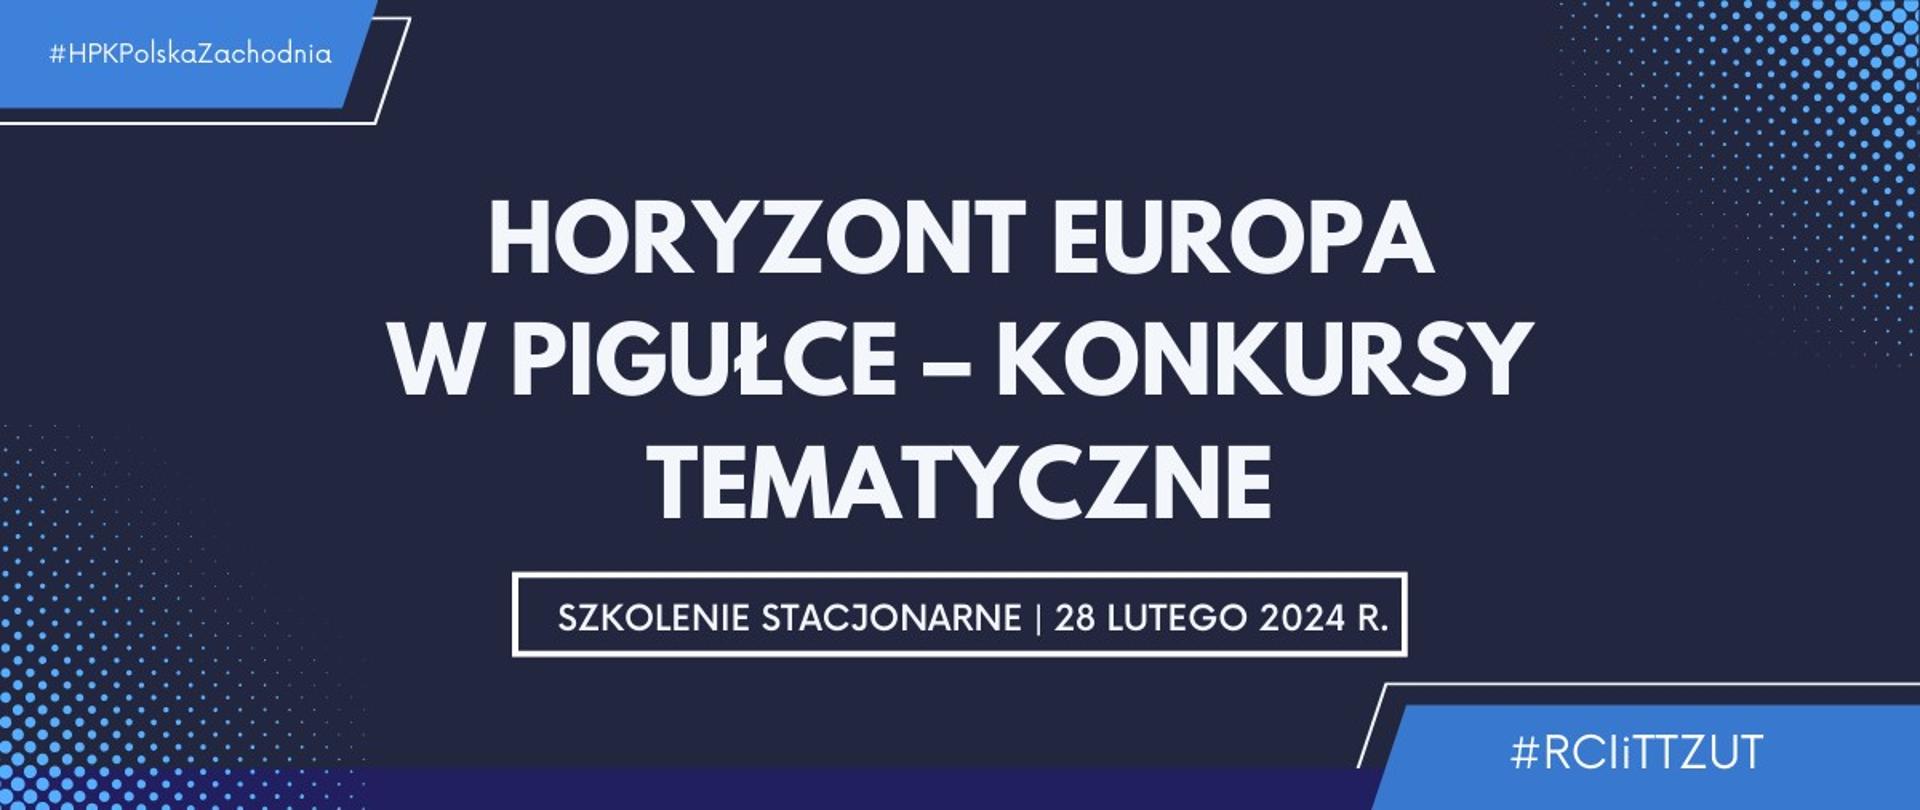 Horyzont Europa w pigułce – konkursy tematyczne (1200 x 507 px)